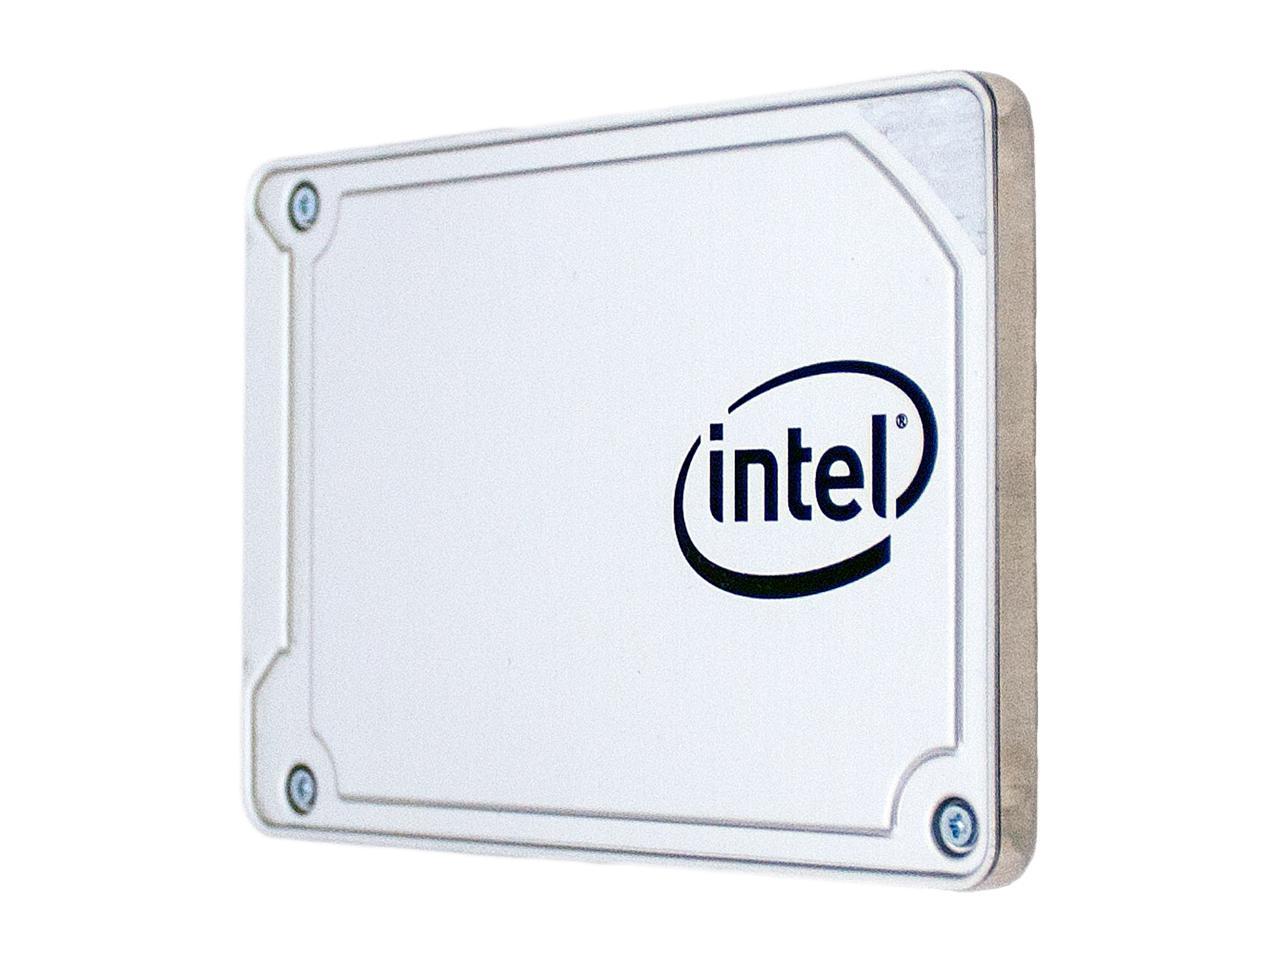 Intel 545s 2.5" 512GB SATA III 64-Layer 3D NAND TLC Internal Solid State Drive (SSD) SSDSC2KW512G8X1